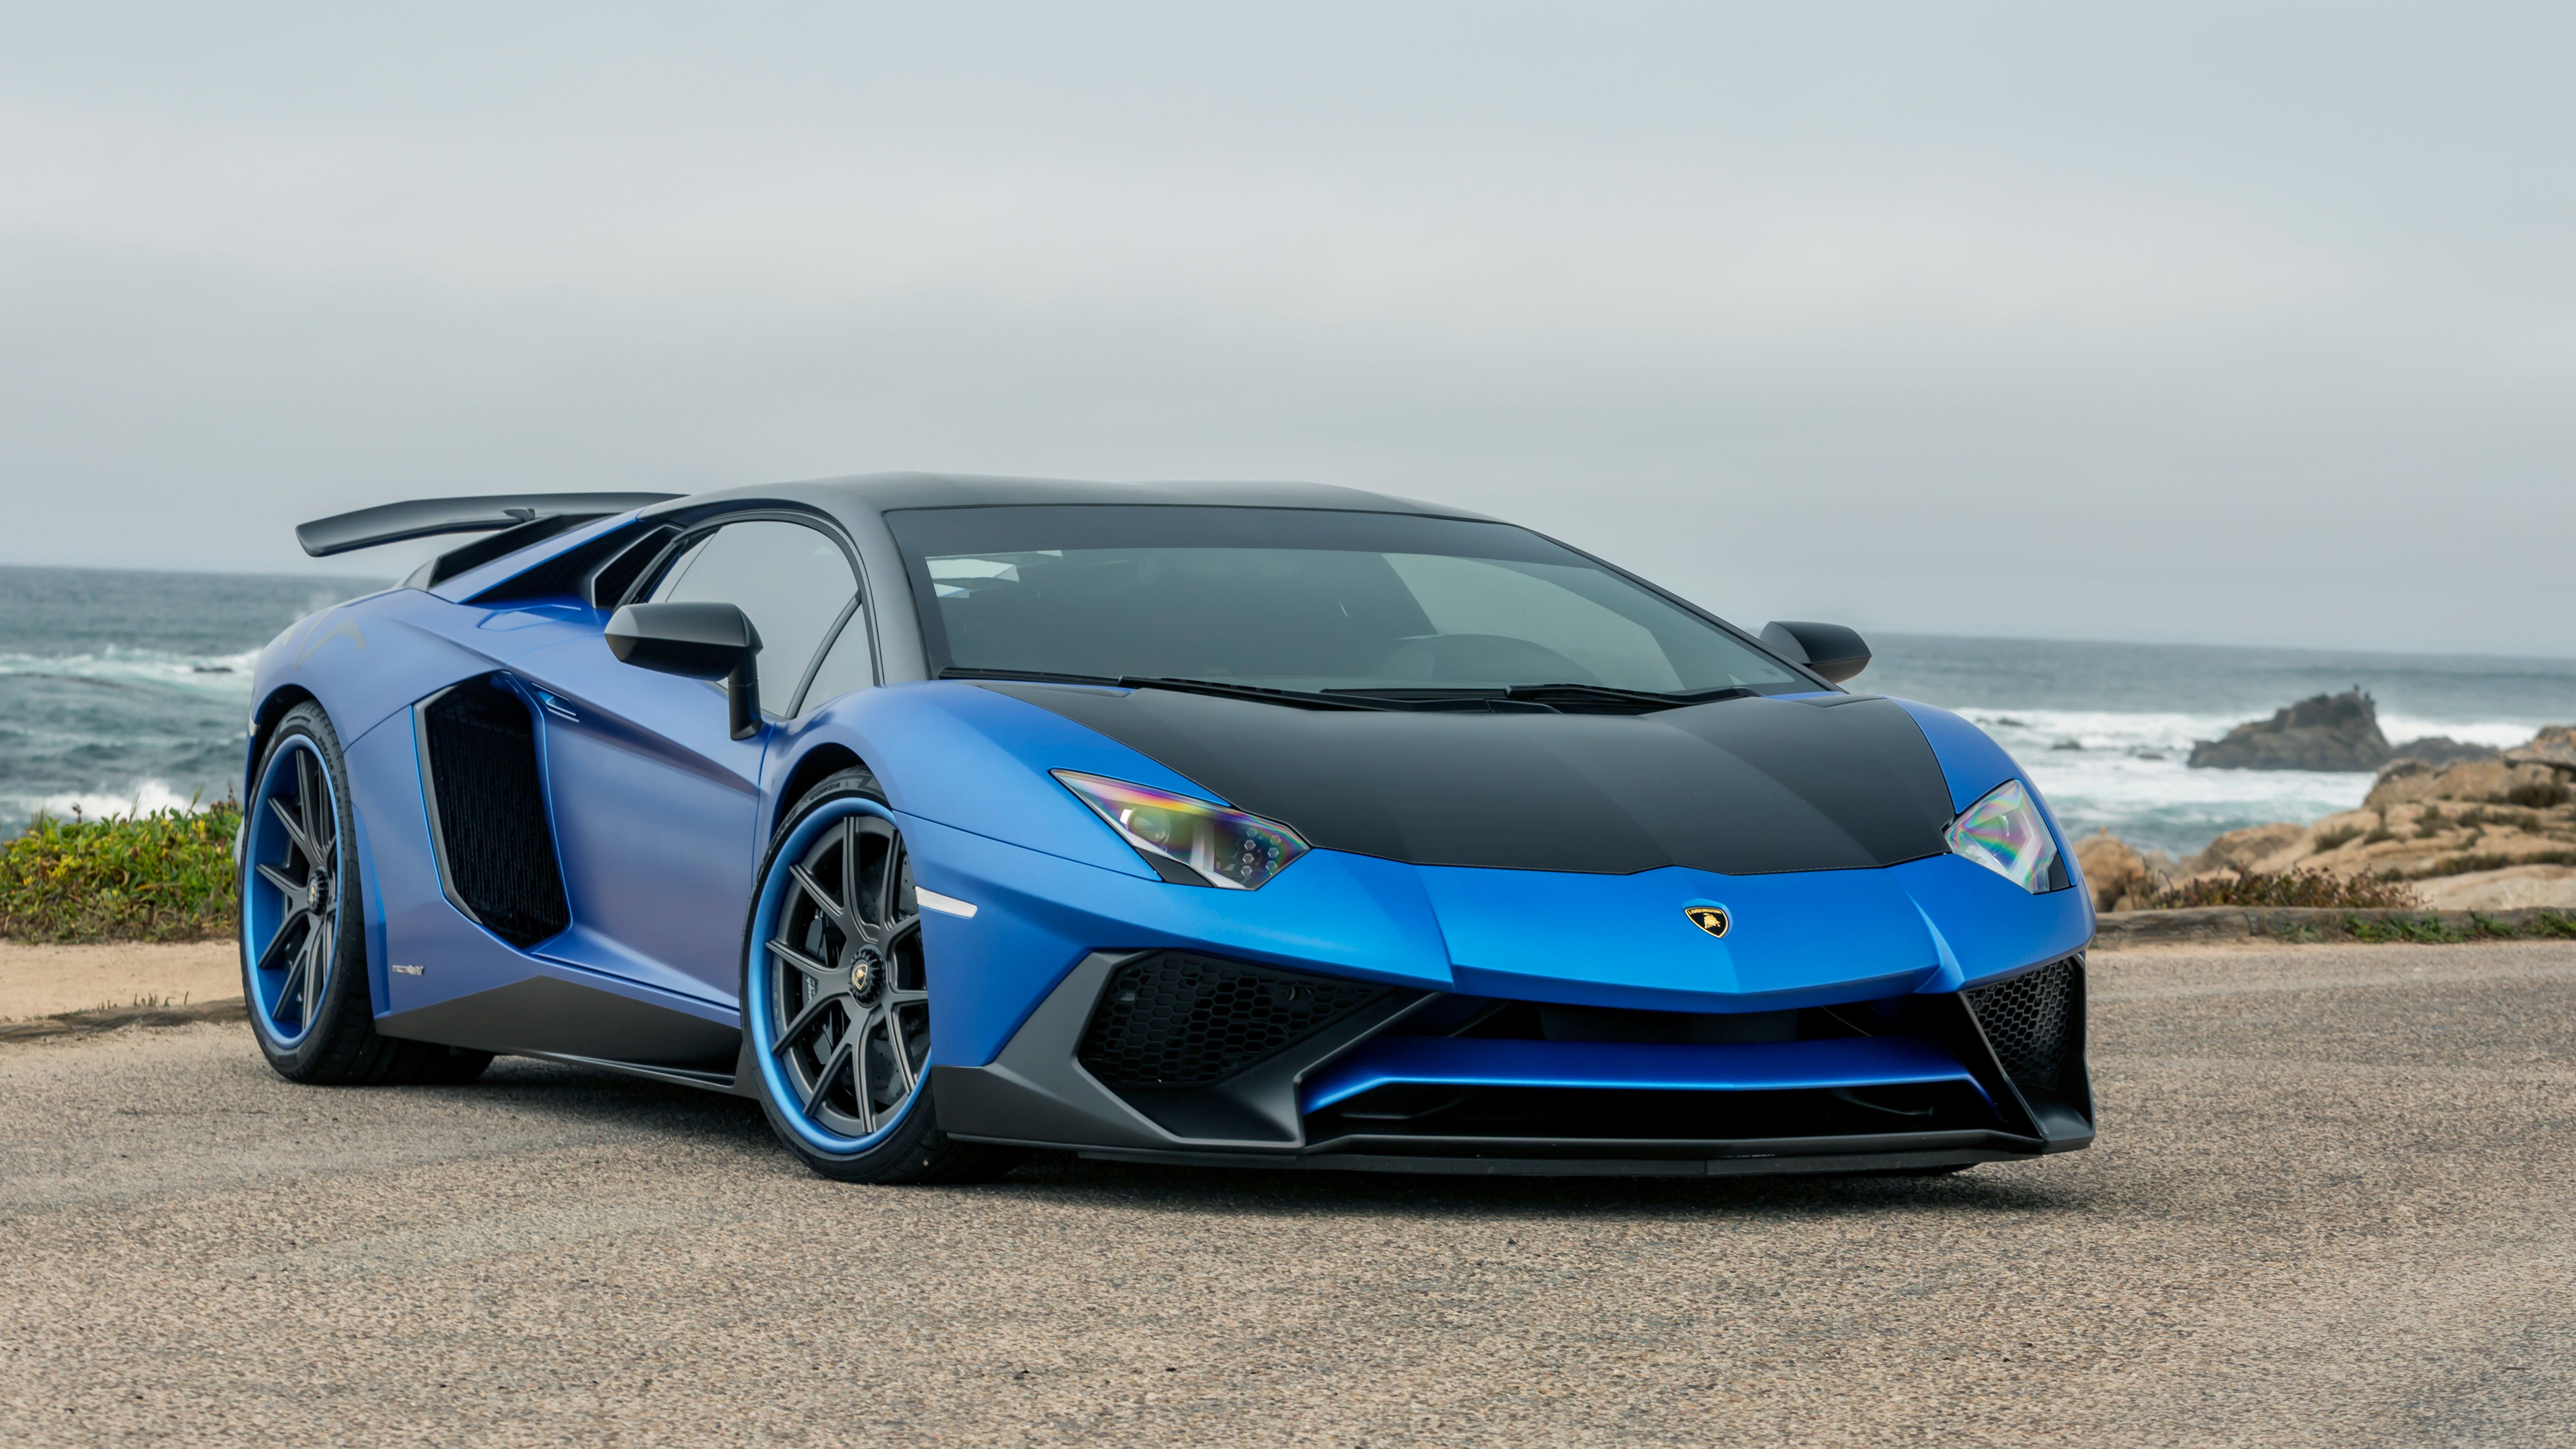 Blue Lamborghini Wallpaper 1080p Free Download. Blue lamborghini